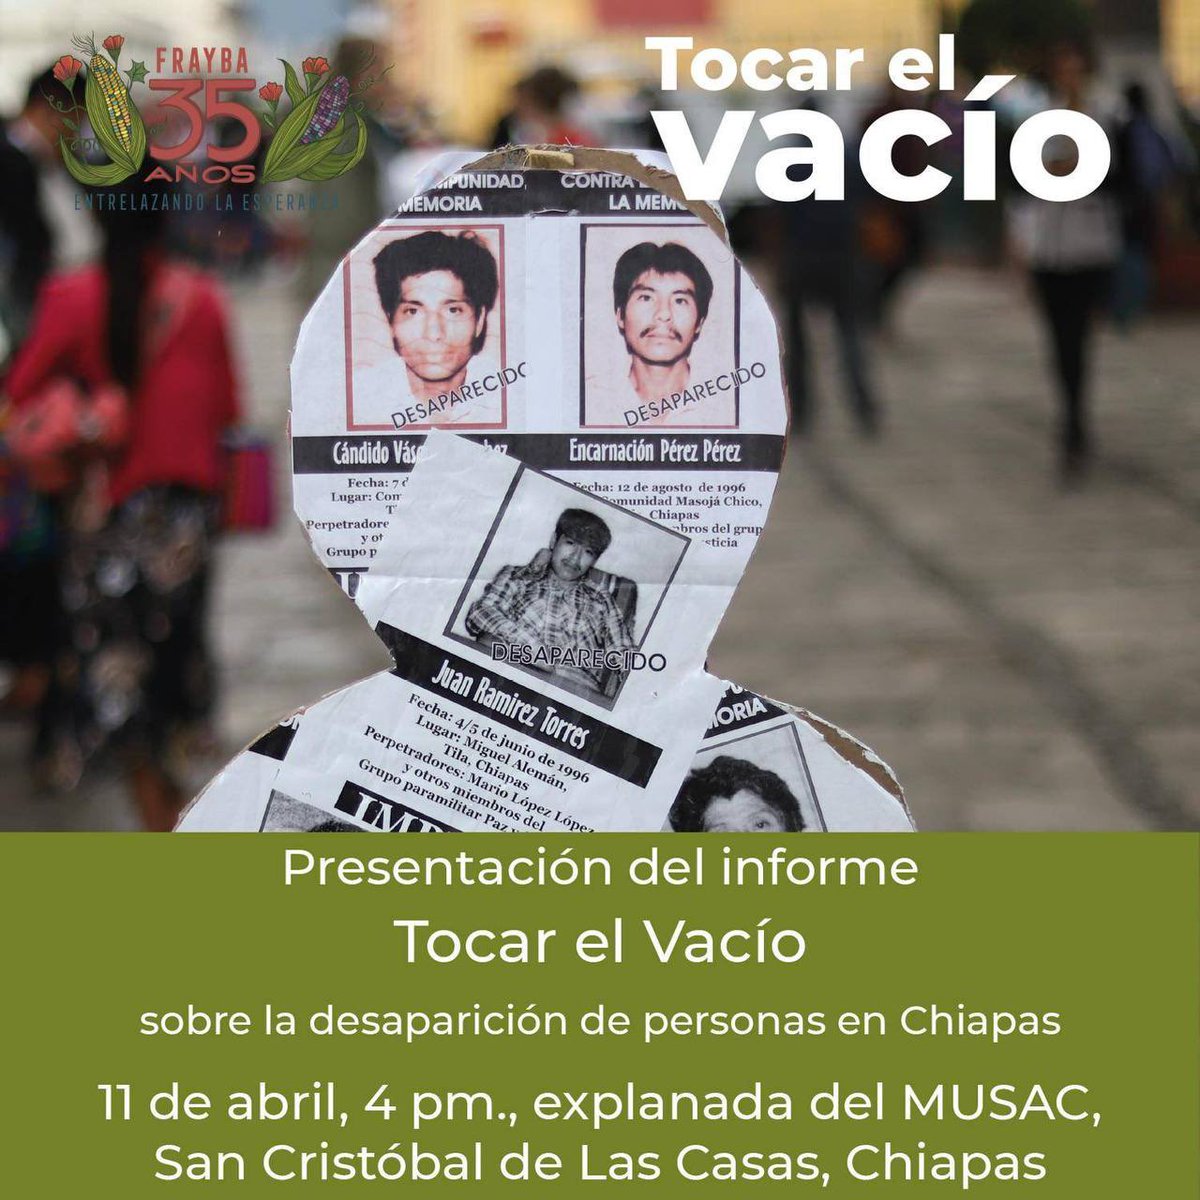 🟢 𝐩𝐫𝐞𝐬𝐞𝐧𝐭𝐚𝐜𝐢𝐨́𝐧 𝐝𝐞𝐥 𝐈𝐧𝐟𝐨𝐫𝐦𝐞 𝙏𝙤𝙘𝙖𝙧 𝙚𝙡 𝙫𝙖𝙘𝙞́𝙤, 𝙨𝙤𝙗𝙧𝙚 𝙡𝙖 𝙙𝙚𝙨𝙖𝙥𝙖𝙧𝙞𝙘𝙞𝙤́𝙣 𝙙𝙚 𝙥𝙚𝙧𝙨𝙤𝙣𝙖𝙨 𝙚𝙣 𝘾𝙝𝙞𝙖𝙥𝙖𝙨. 🗓️ 11/03, 4 pm., SCLC 🌀 Participan: @CdhFrayba, @melelxojobal, @vm_apm y Familiares de personas desaparecidas